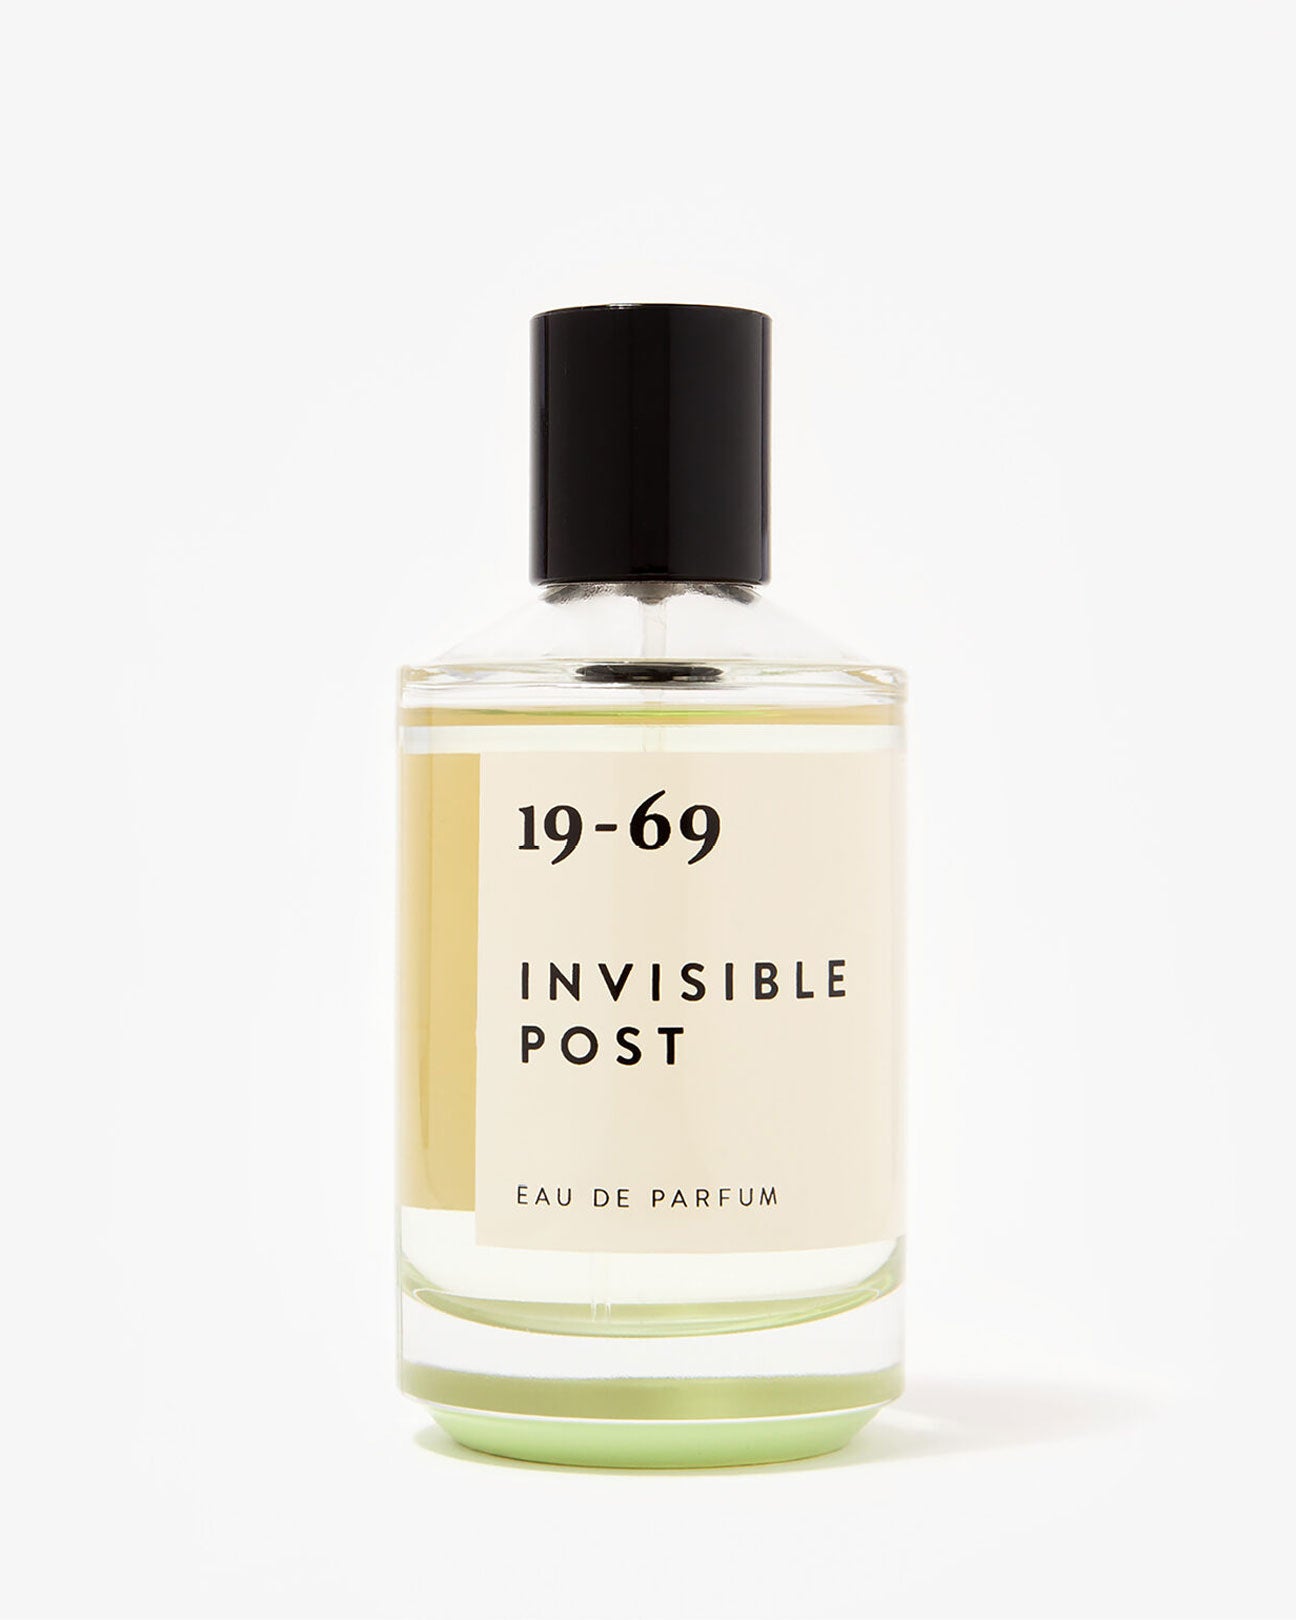 19-69 Eau De Parfum 30ml. in Invisible Post